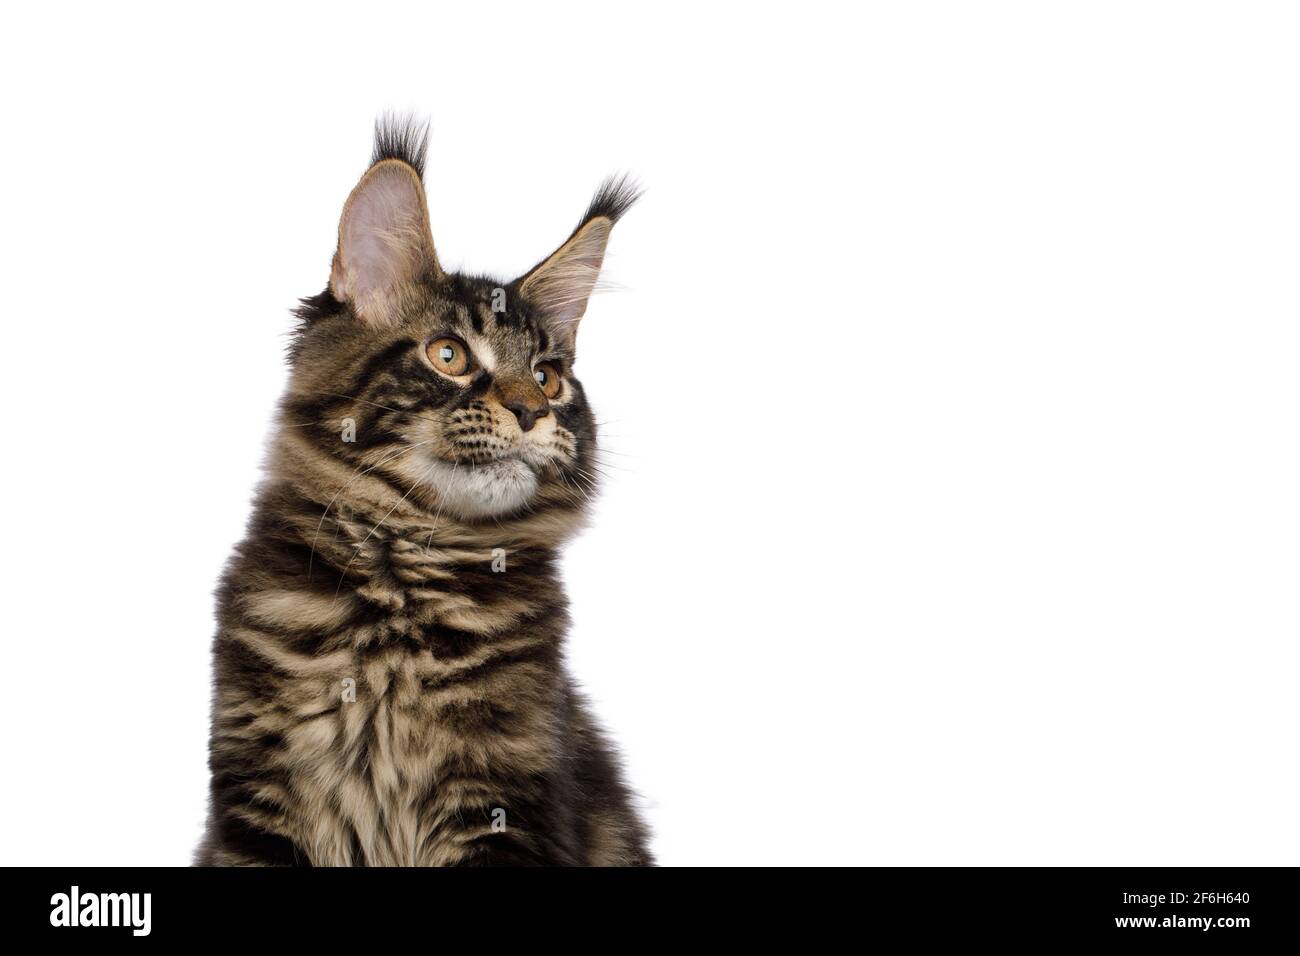 Retrato de gato de Maine Coon mirando al lado aislado sobre fondo blanco, vista de perfil Foto de stock